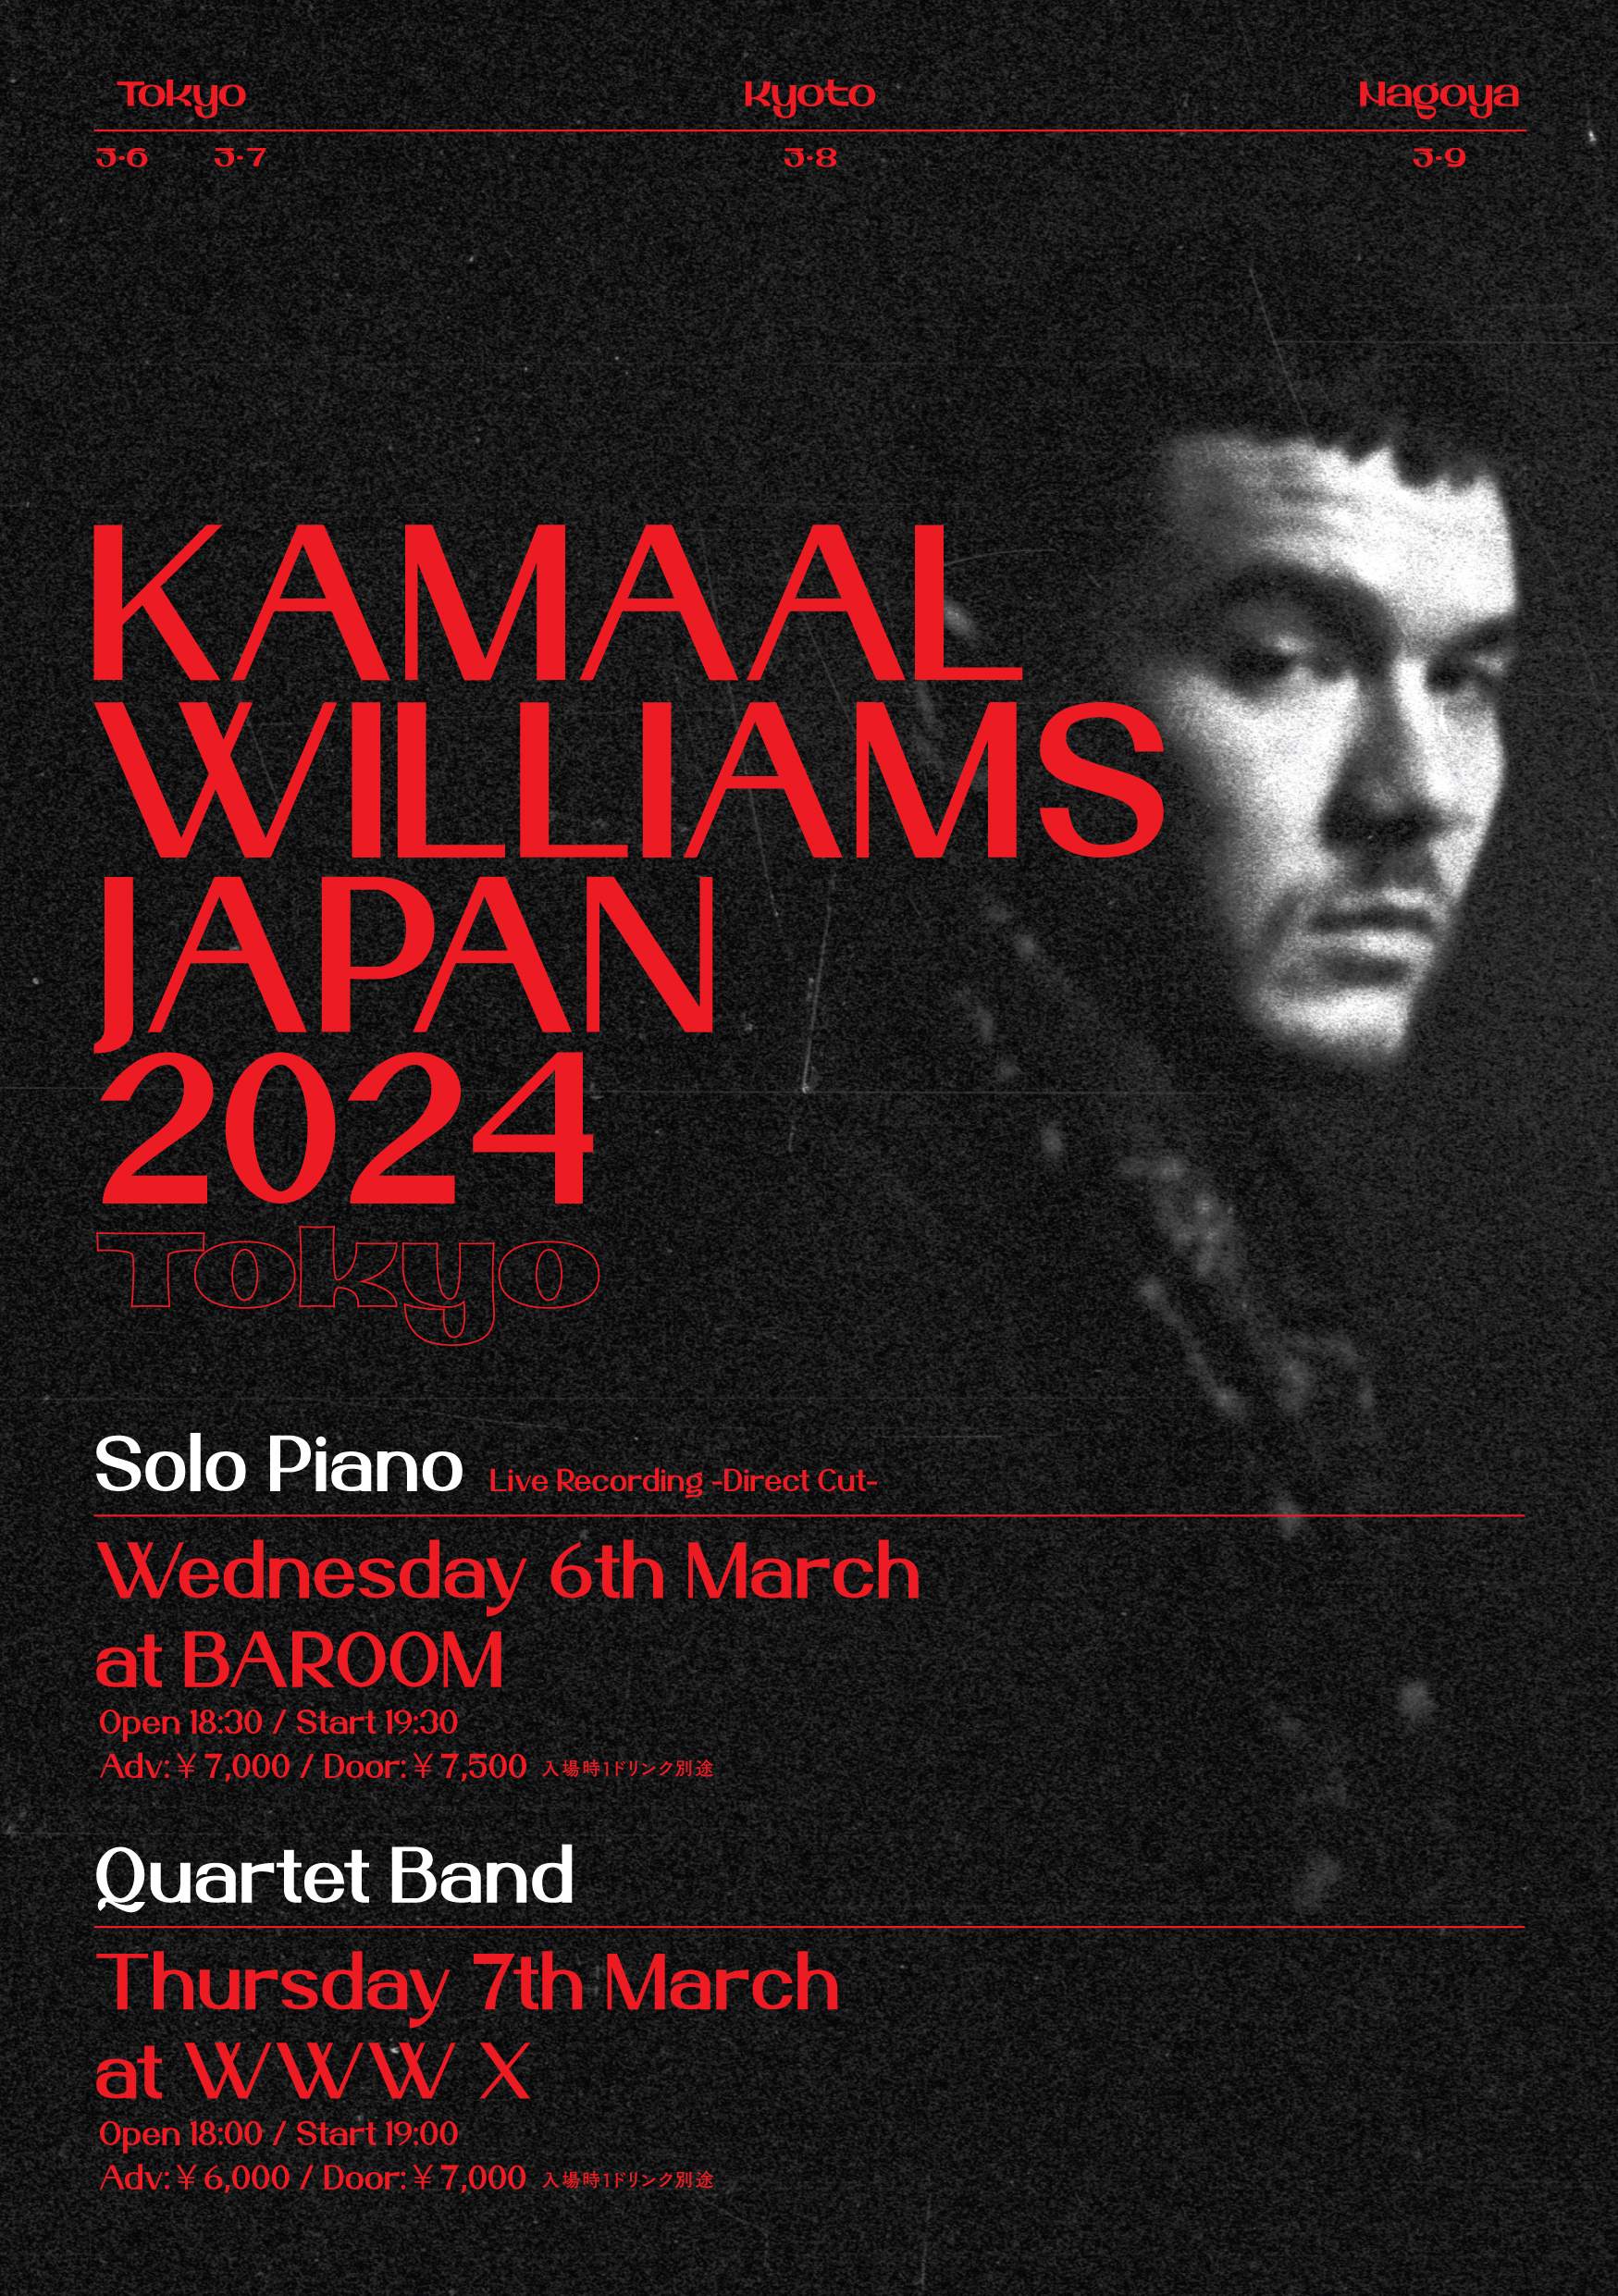 Kamaal Williams Japan Tour 2024 - Página frontal